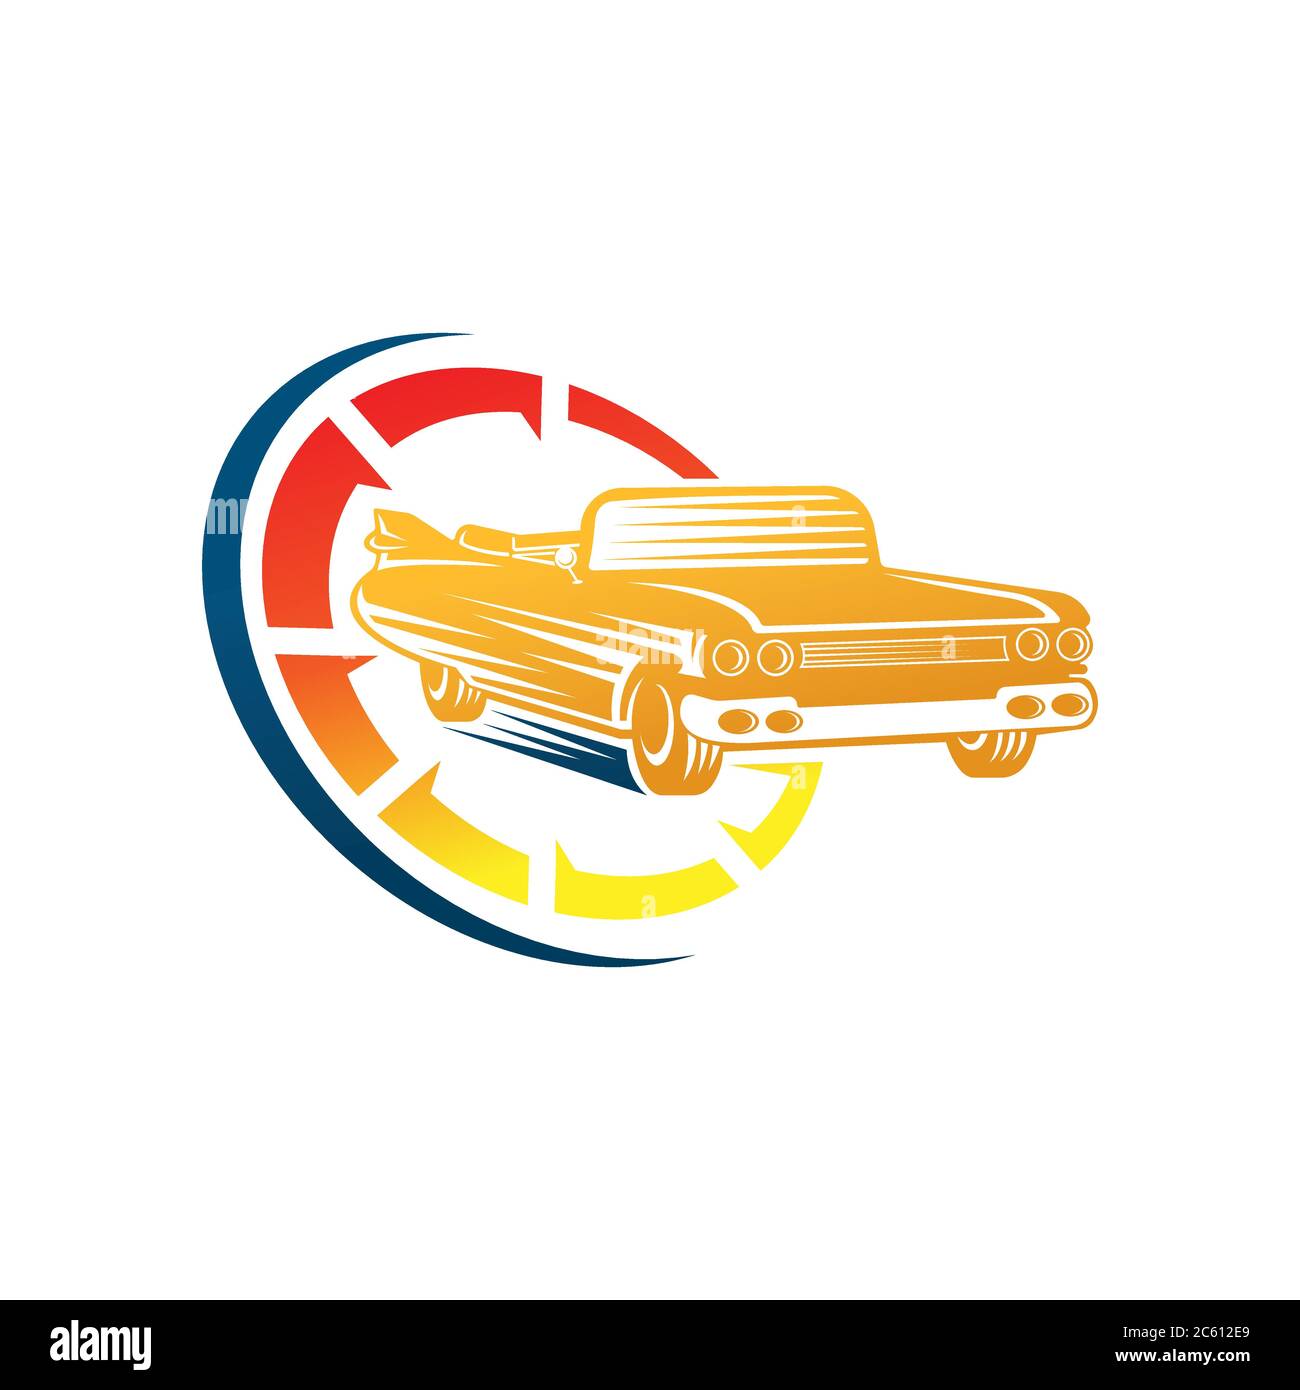 Logo et emblème de voiture classique Illustration vectorielle. Vintage Classic car Vector logo Icon silhouette design. Illustration vectorielle du logo de voiture classique pour Illustration de Vecteur